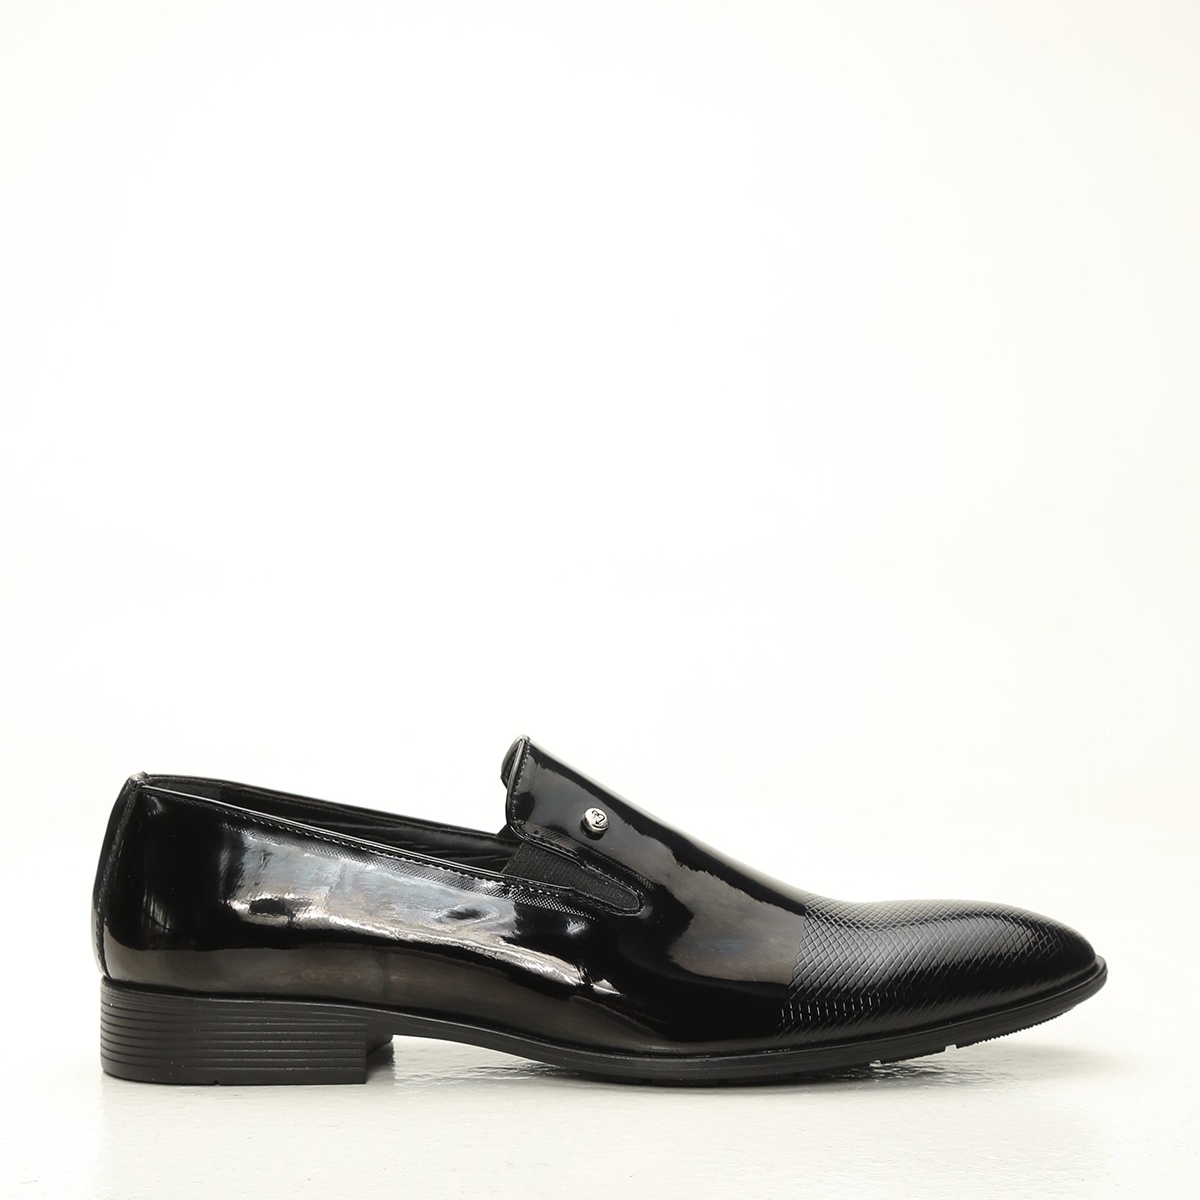 Flo Siyah Erkek Klasik Ayakkabı 1009-20-112005. 1